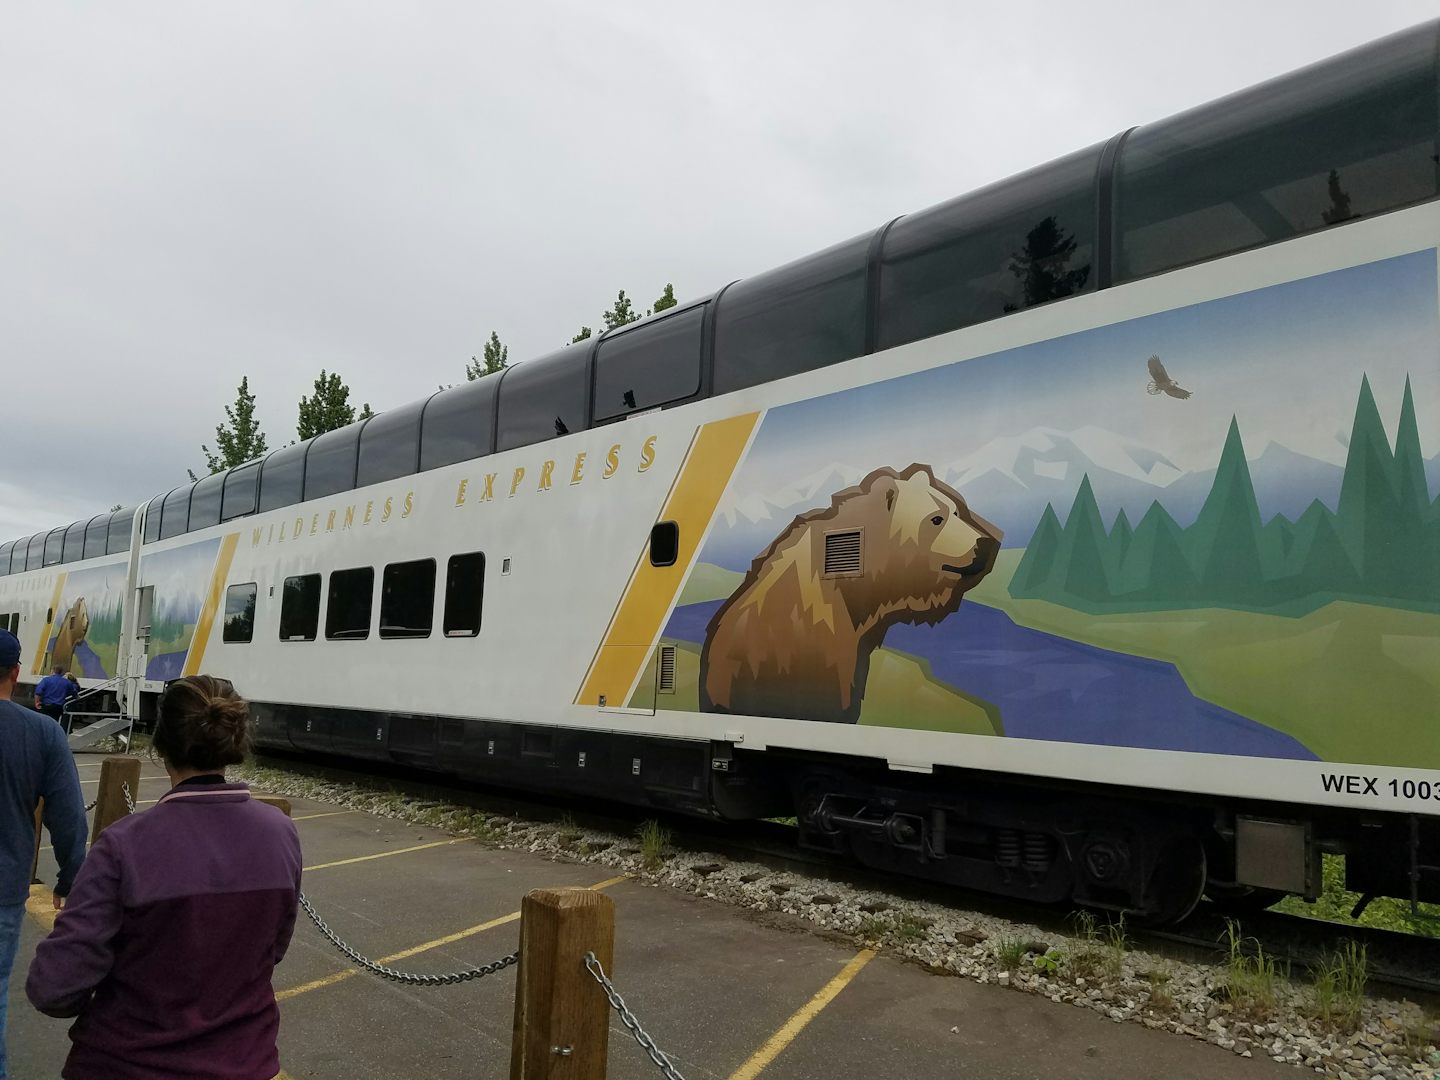 Wilderness Express train car